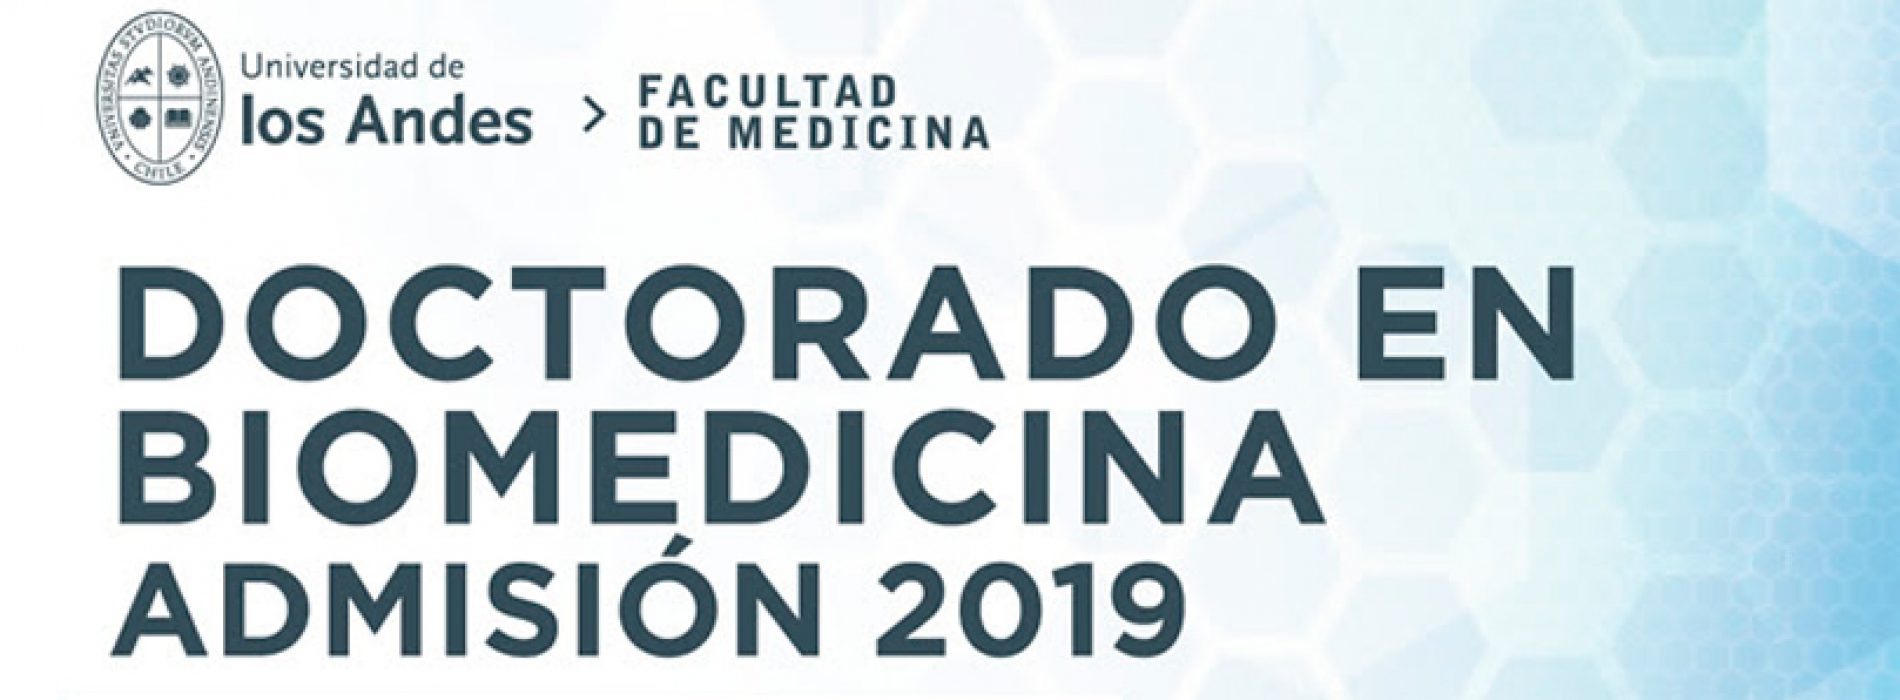 Doctorado en Biomedicina Universidad de los Andes – Admisión 2019